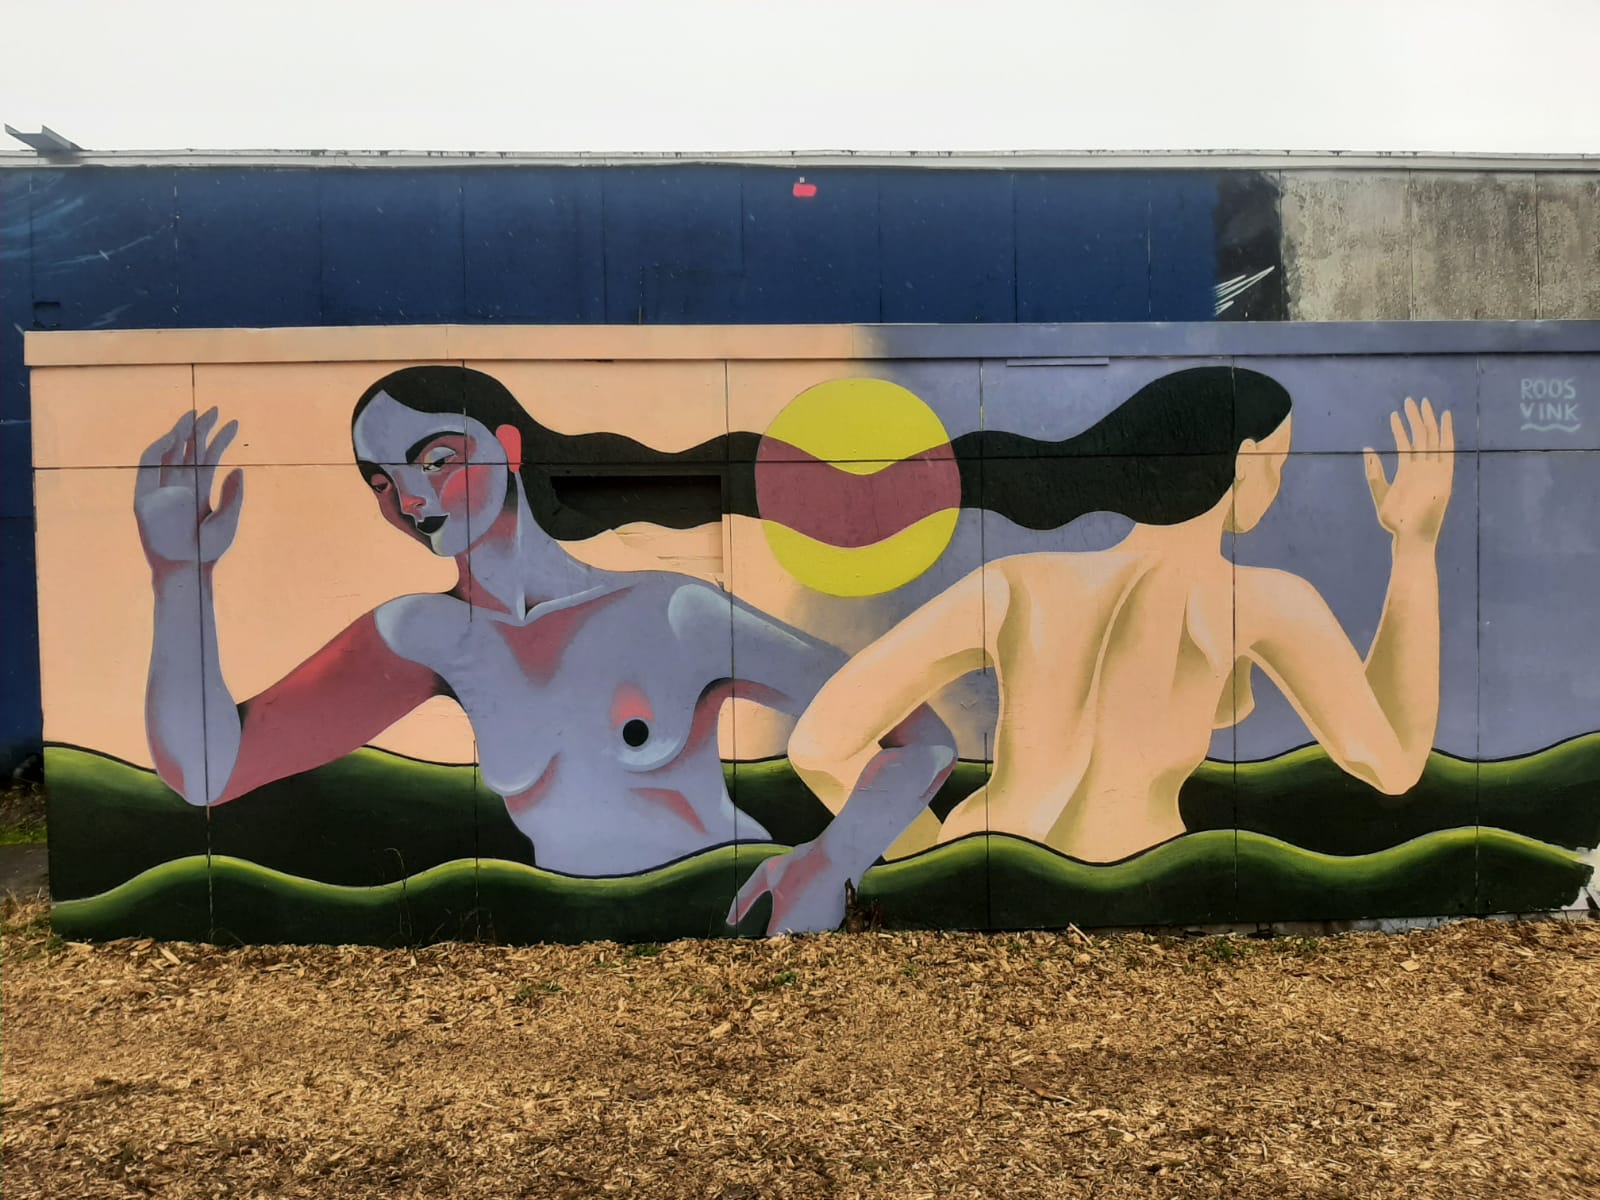 Titelbild des Festivals - Graffiti von Roos Vink auf dem Teufelsberg in Berlin, Foto von Holger Peter